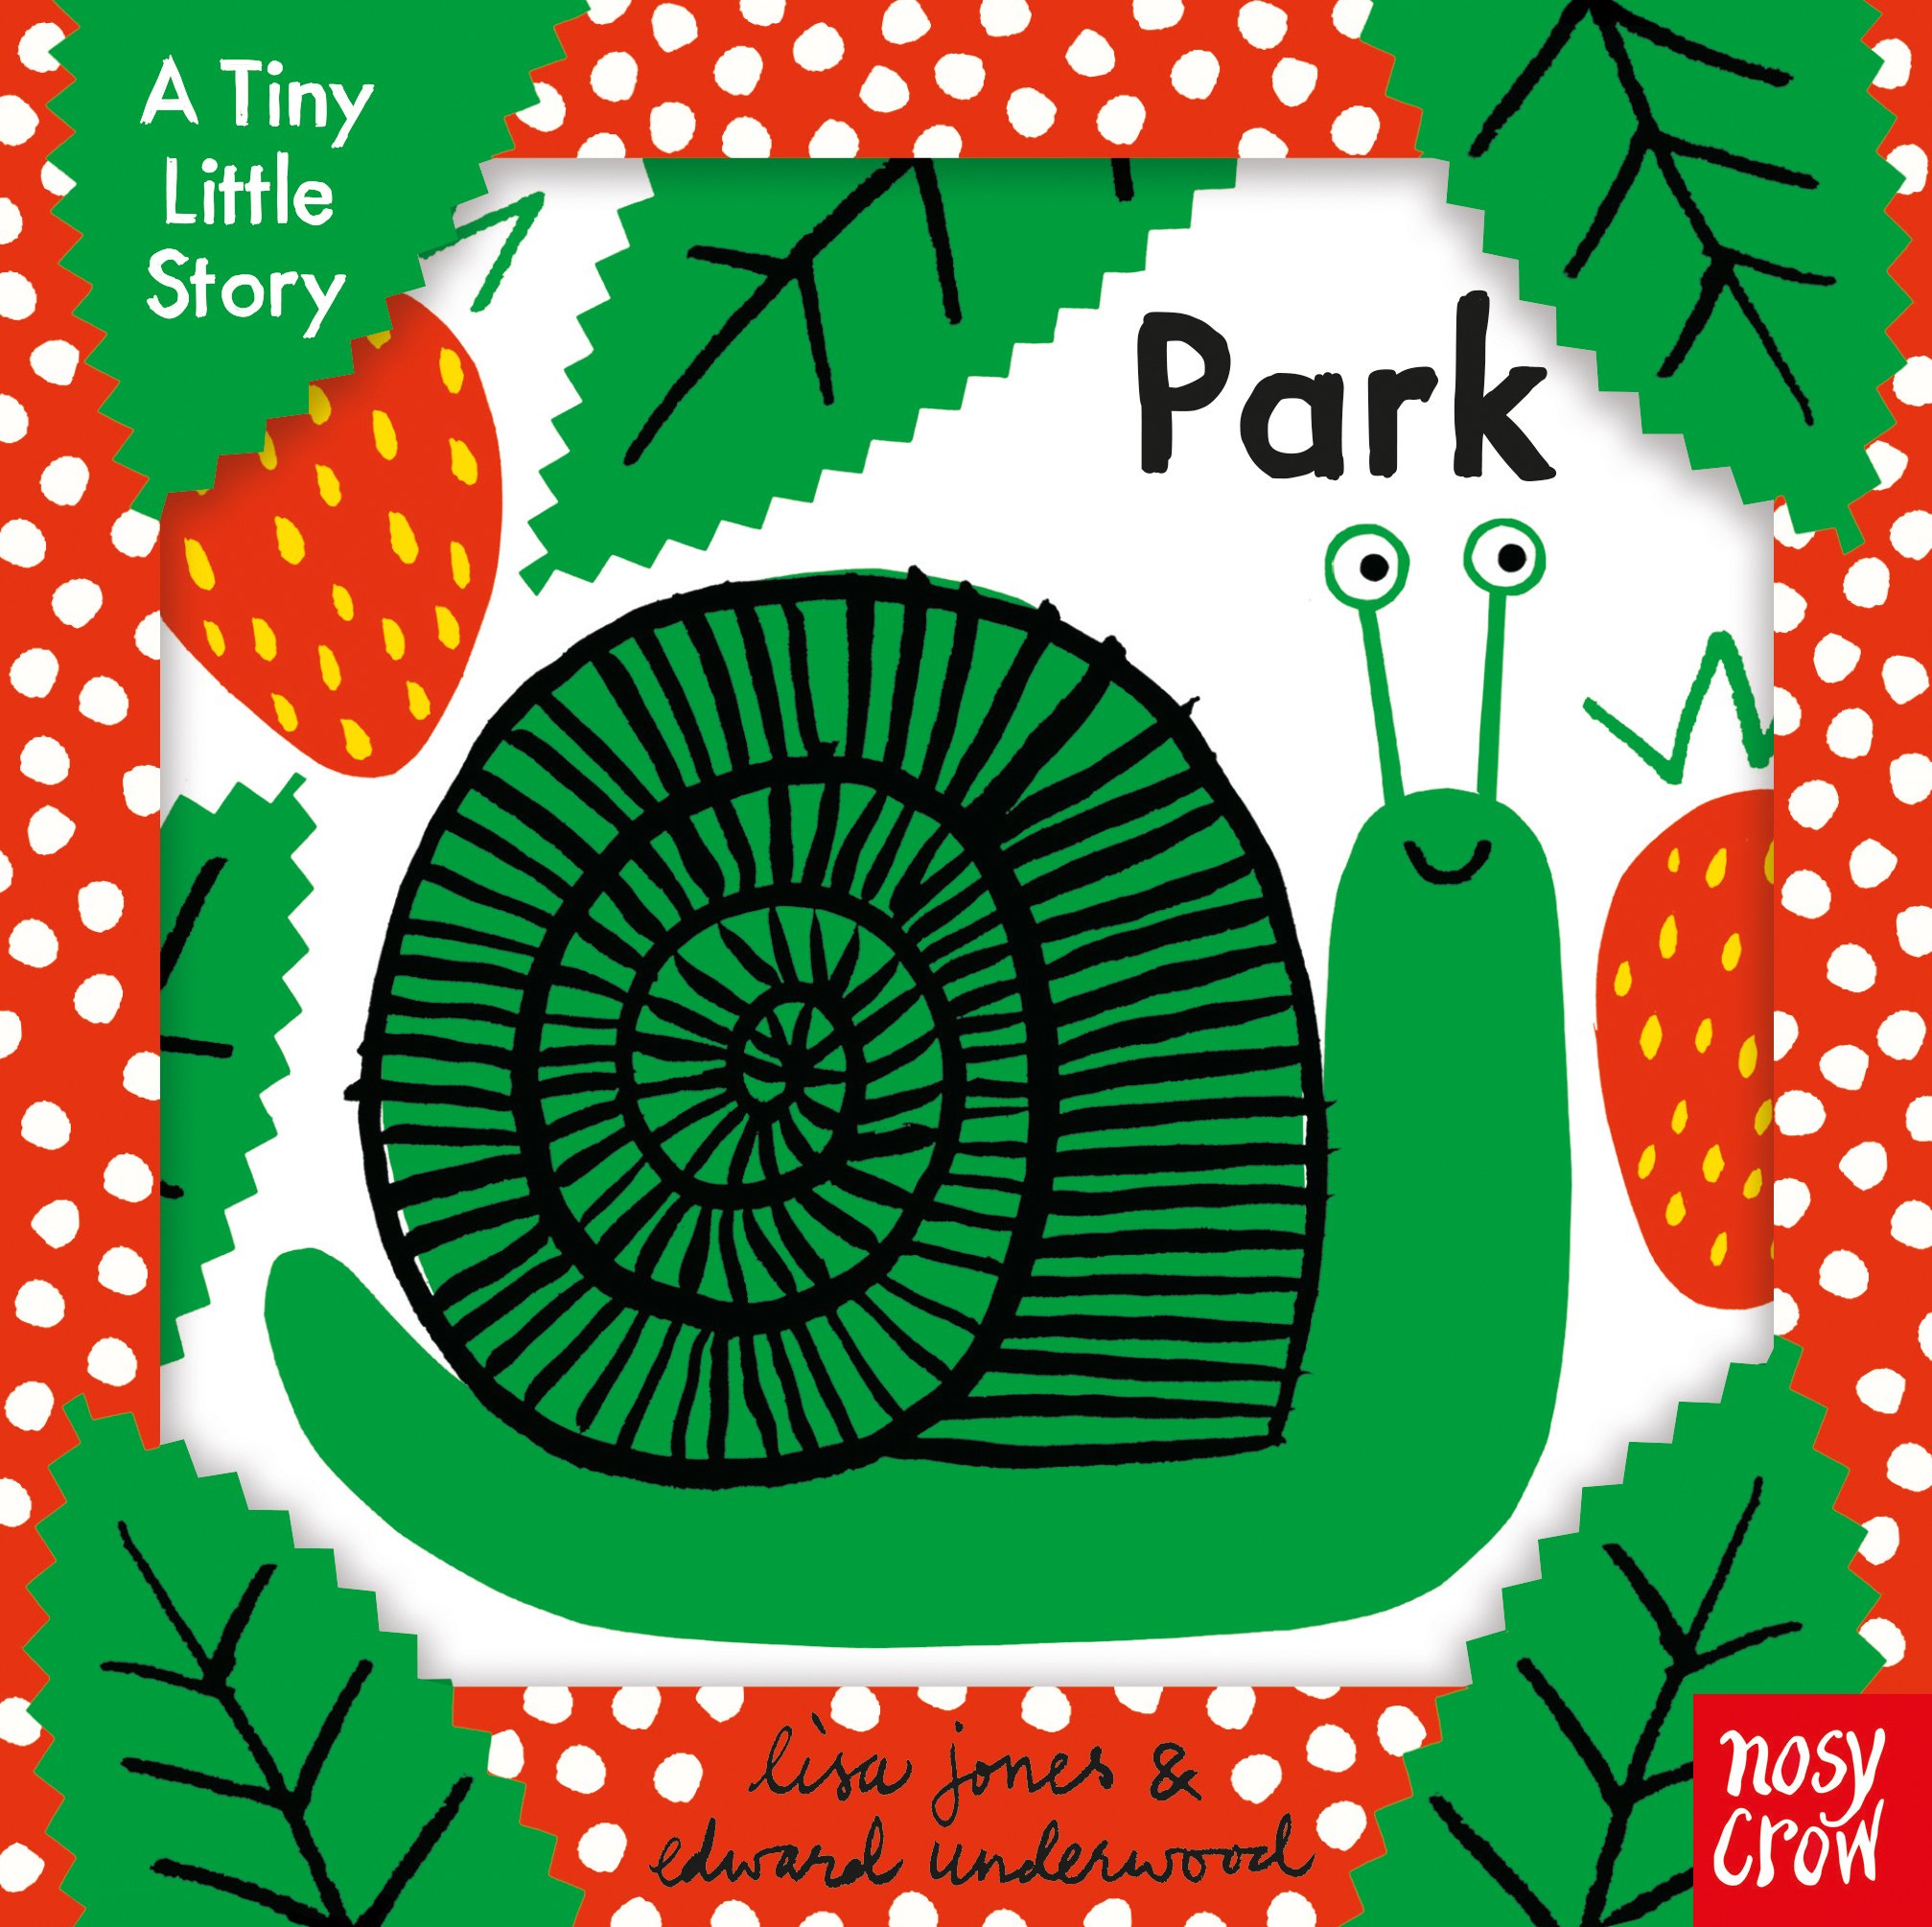 A Tiny Little Story -Park | Lisa Jones and Edward Underwood